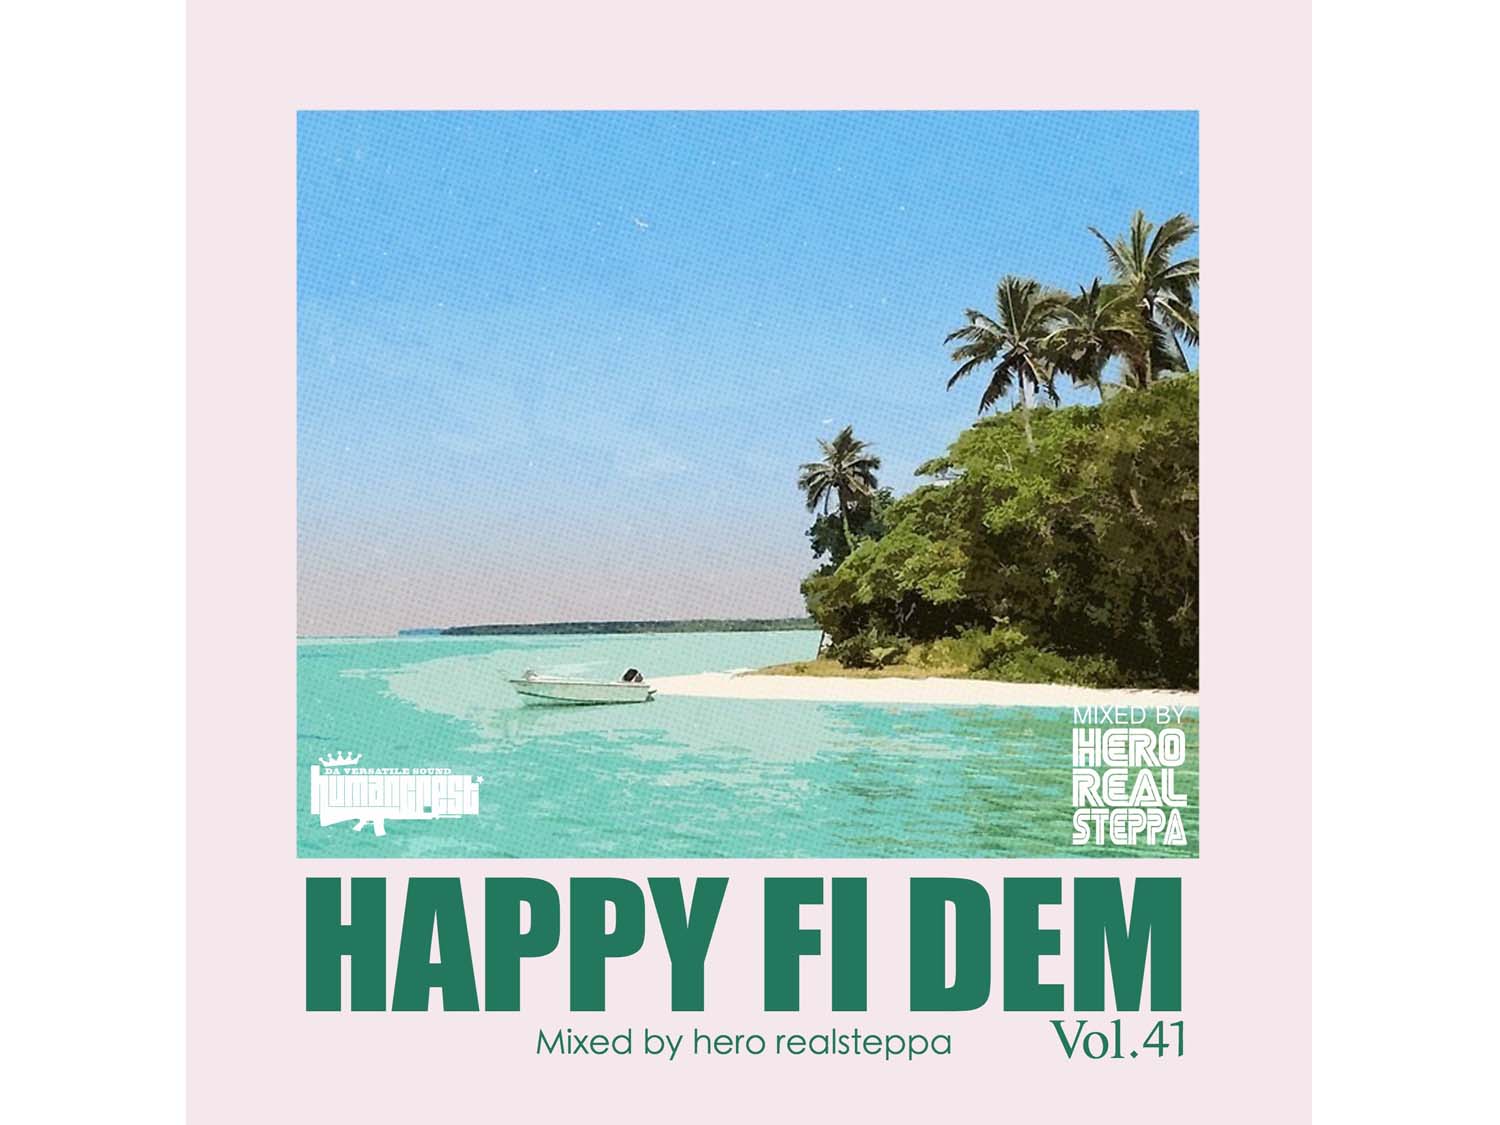 HAPPY FI DEM vol.41